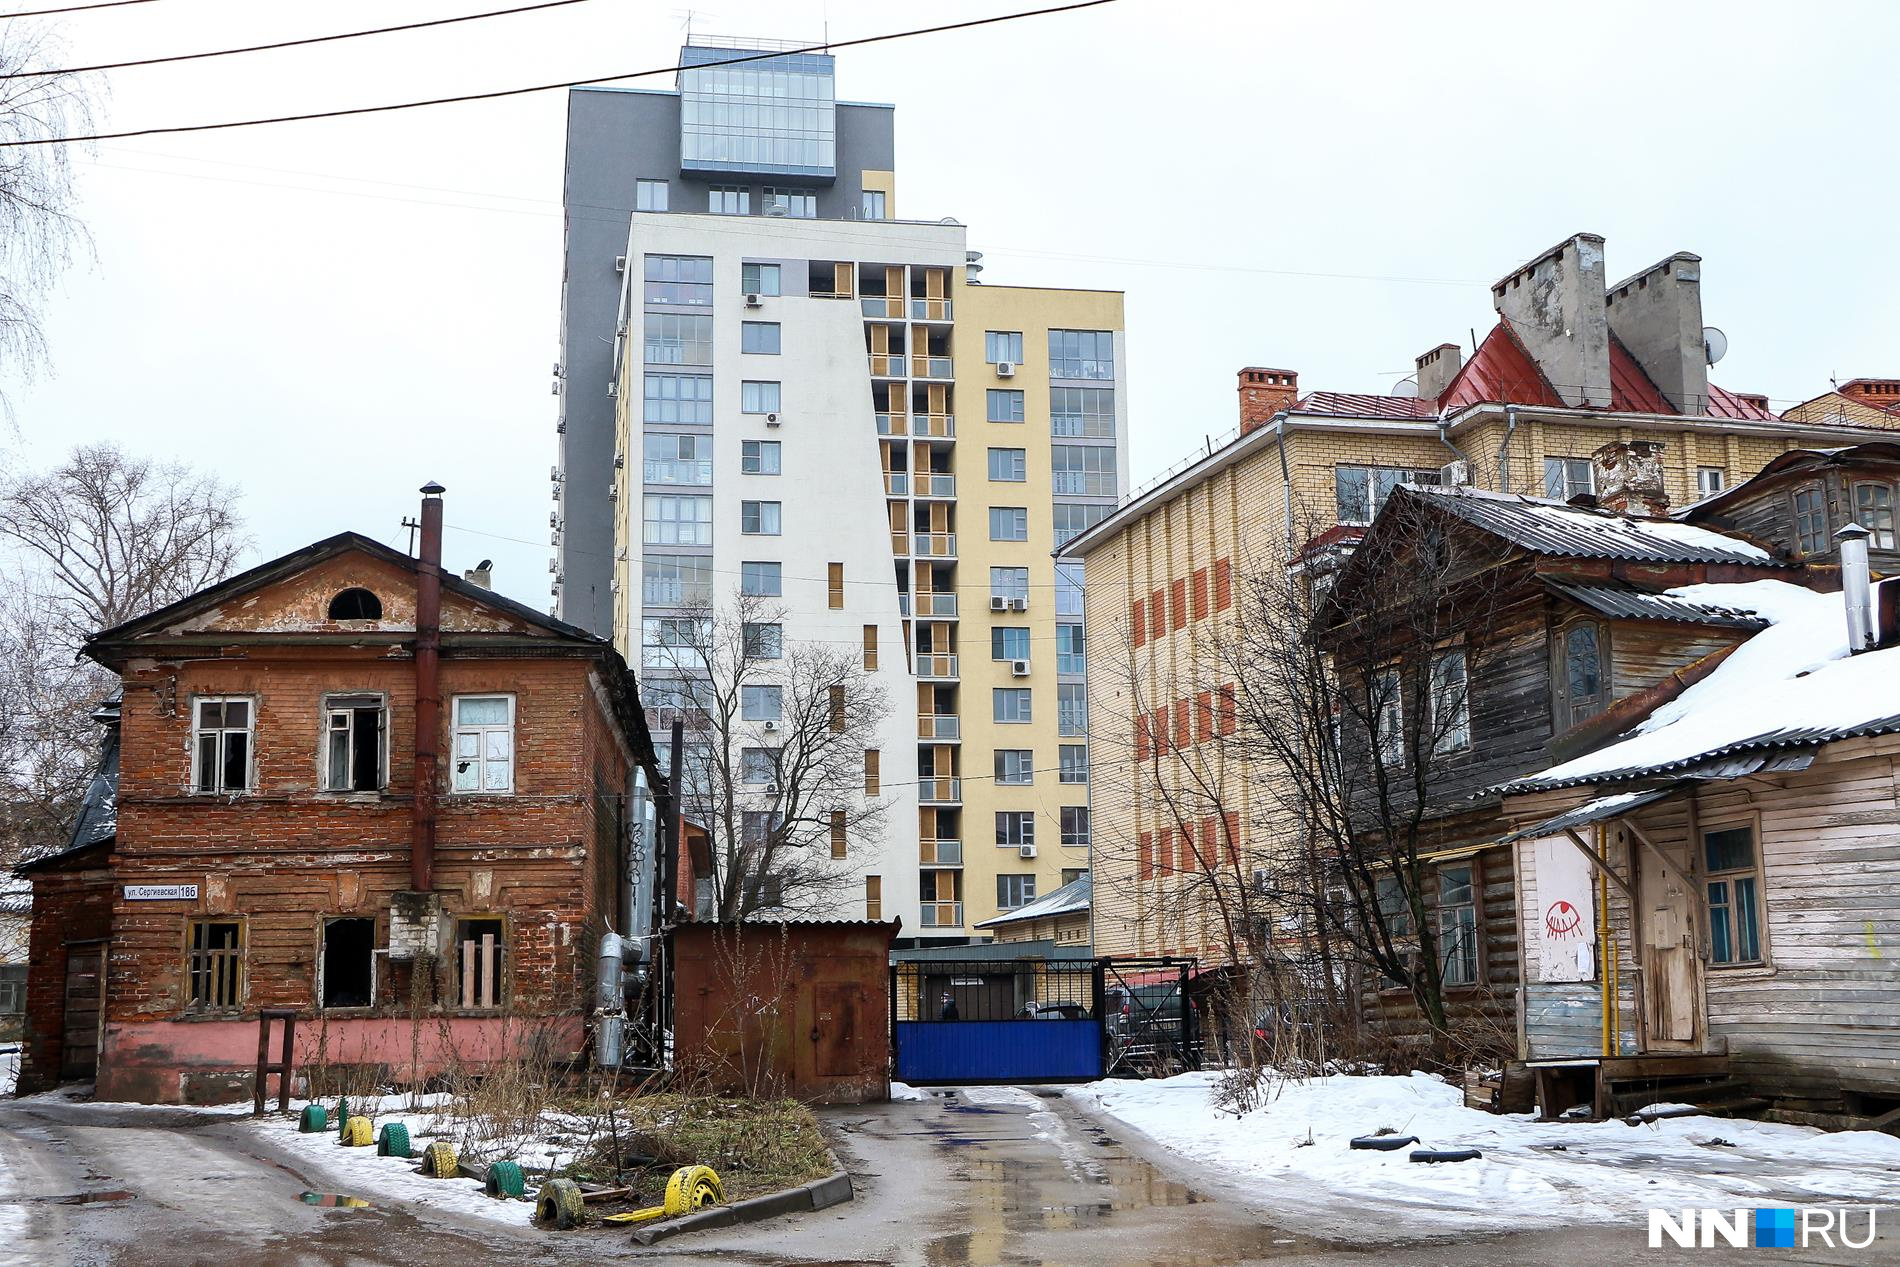 Контрасты нижегородских улиц